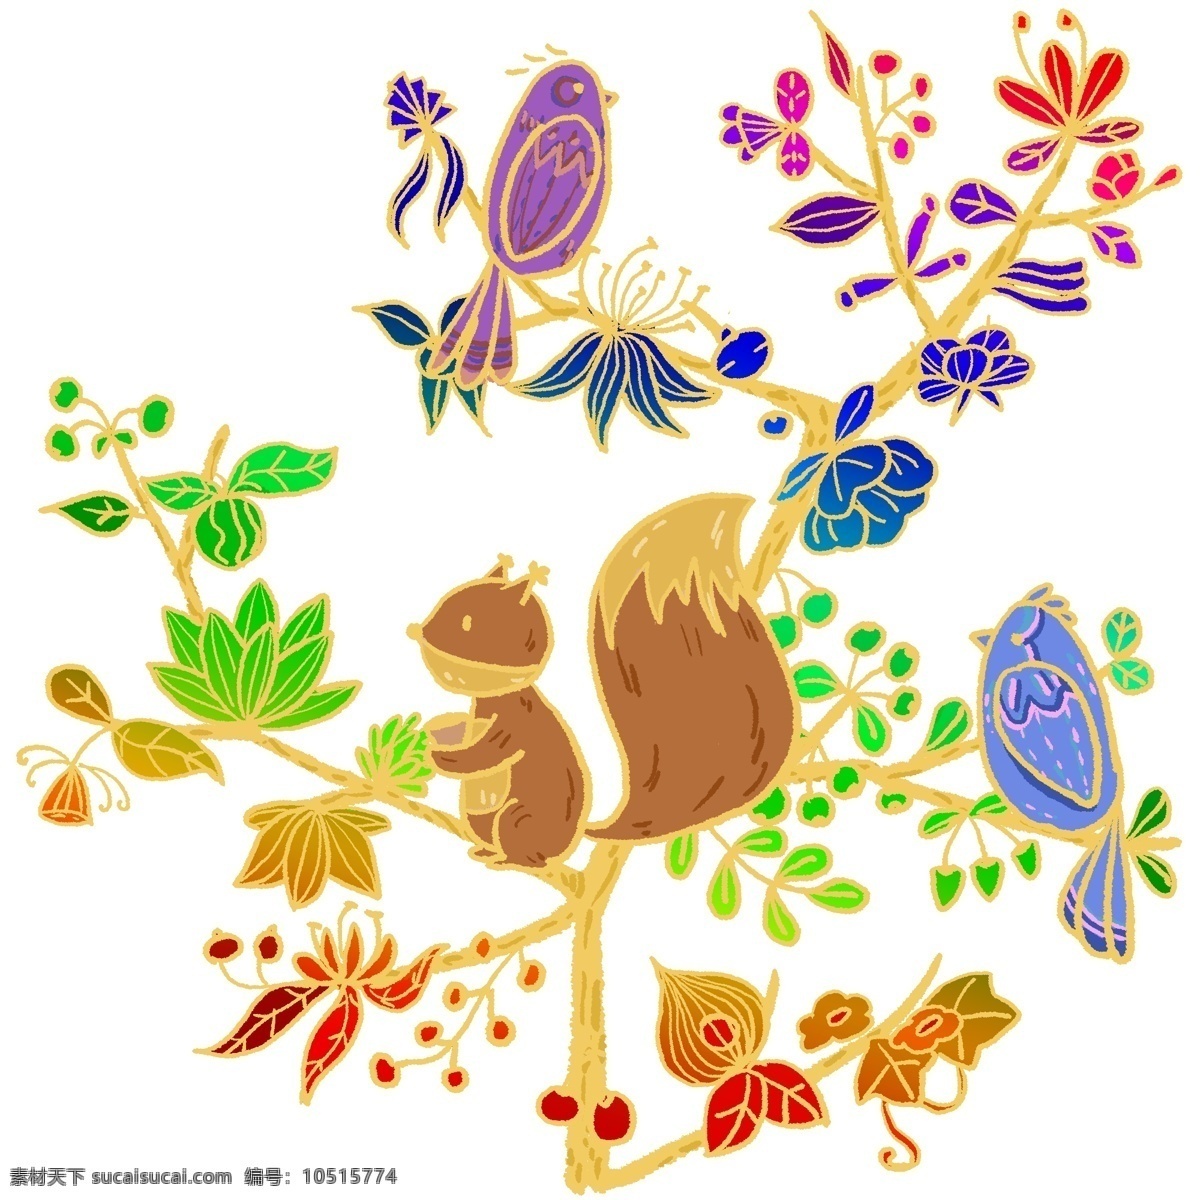 手绘 卡通 秘密花园 松鼠 小鸟 植物 花朵 花 动物 森林 野外 精致 七彩 绚彩 金边